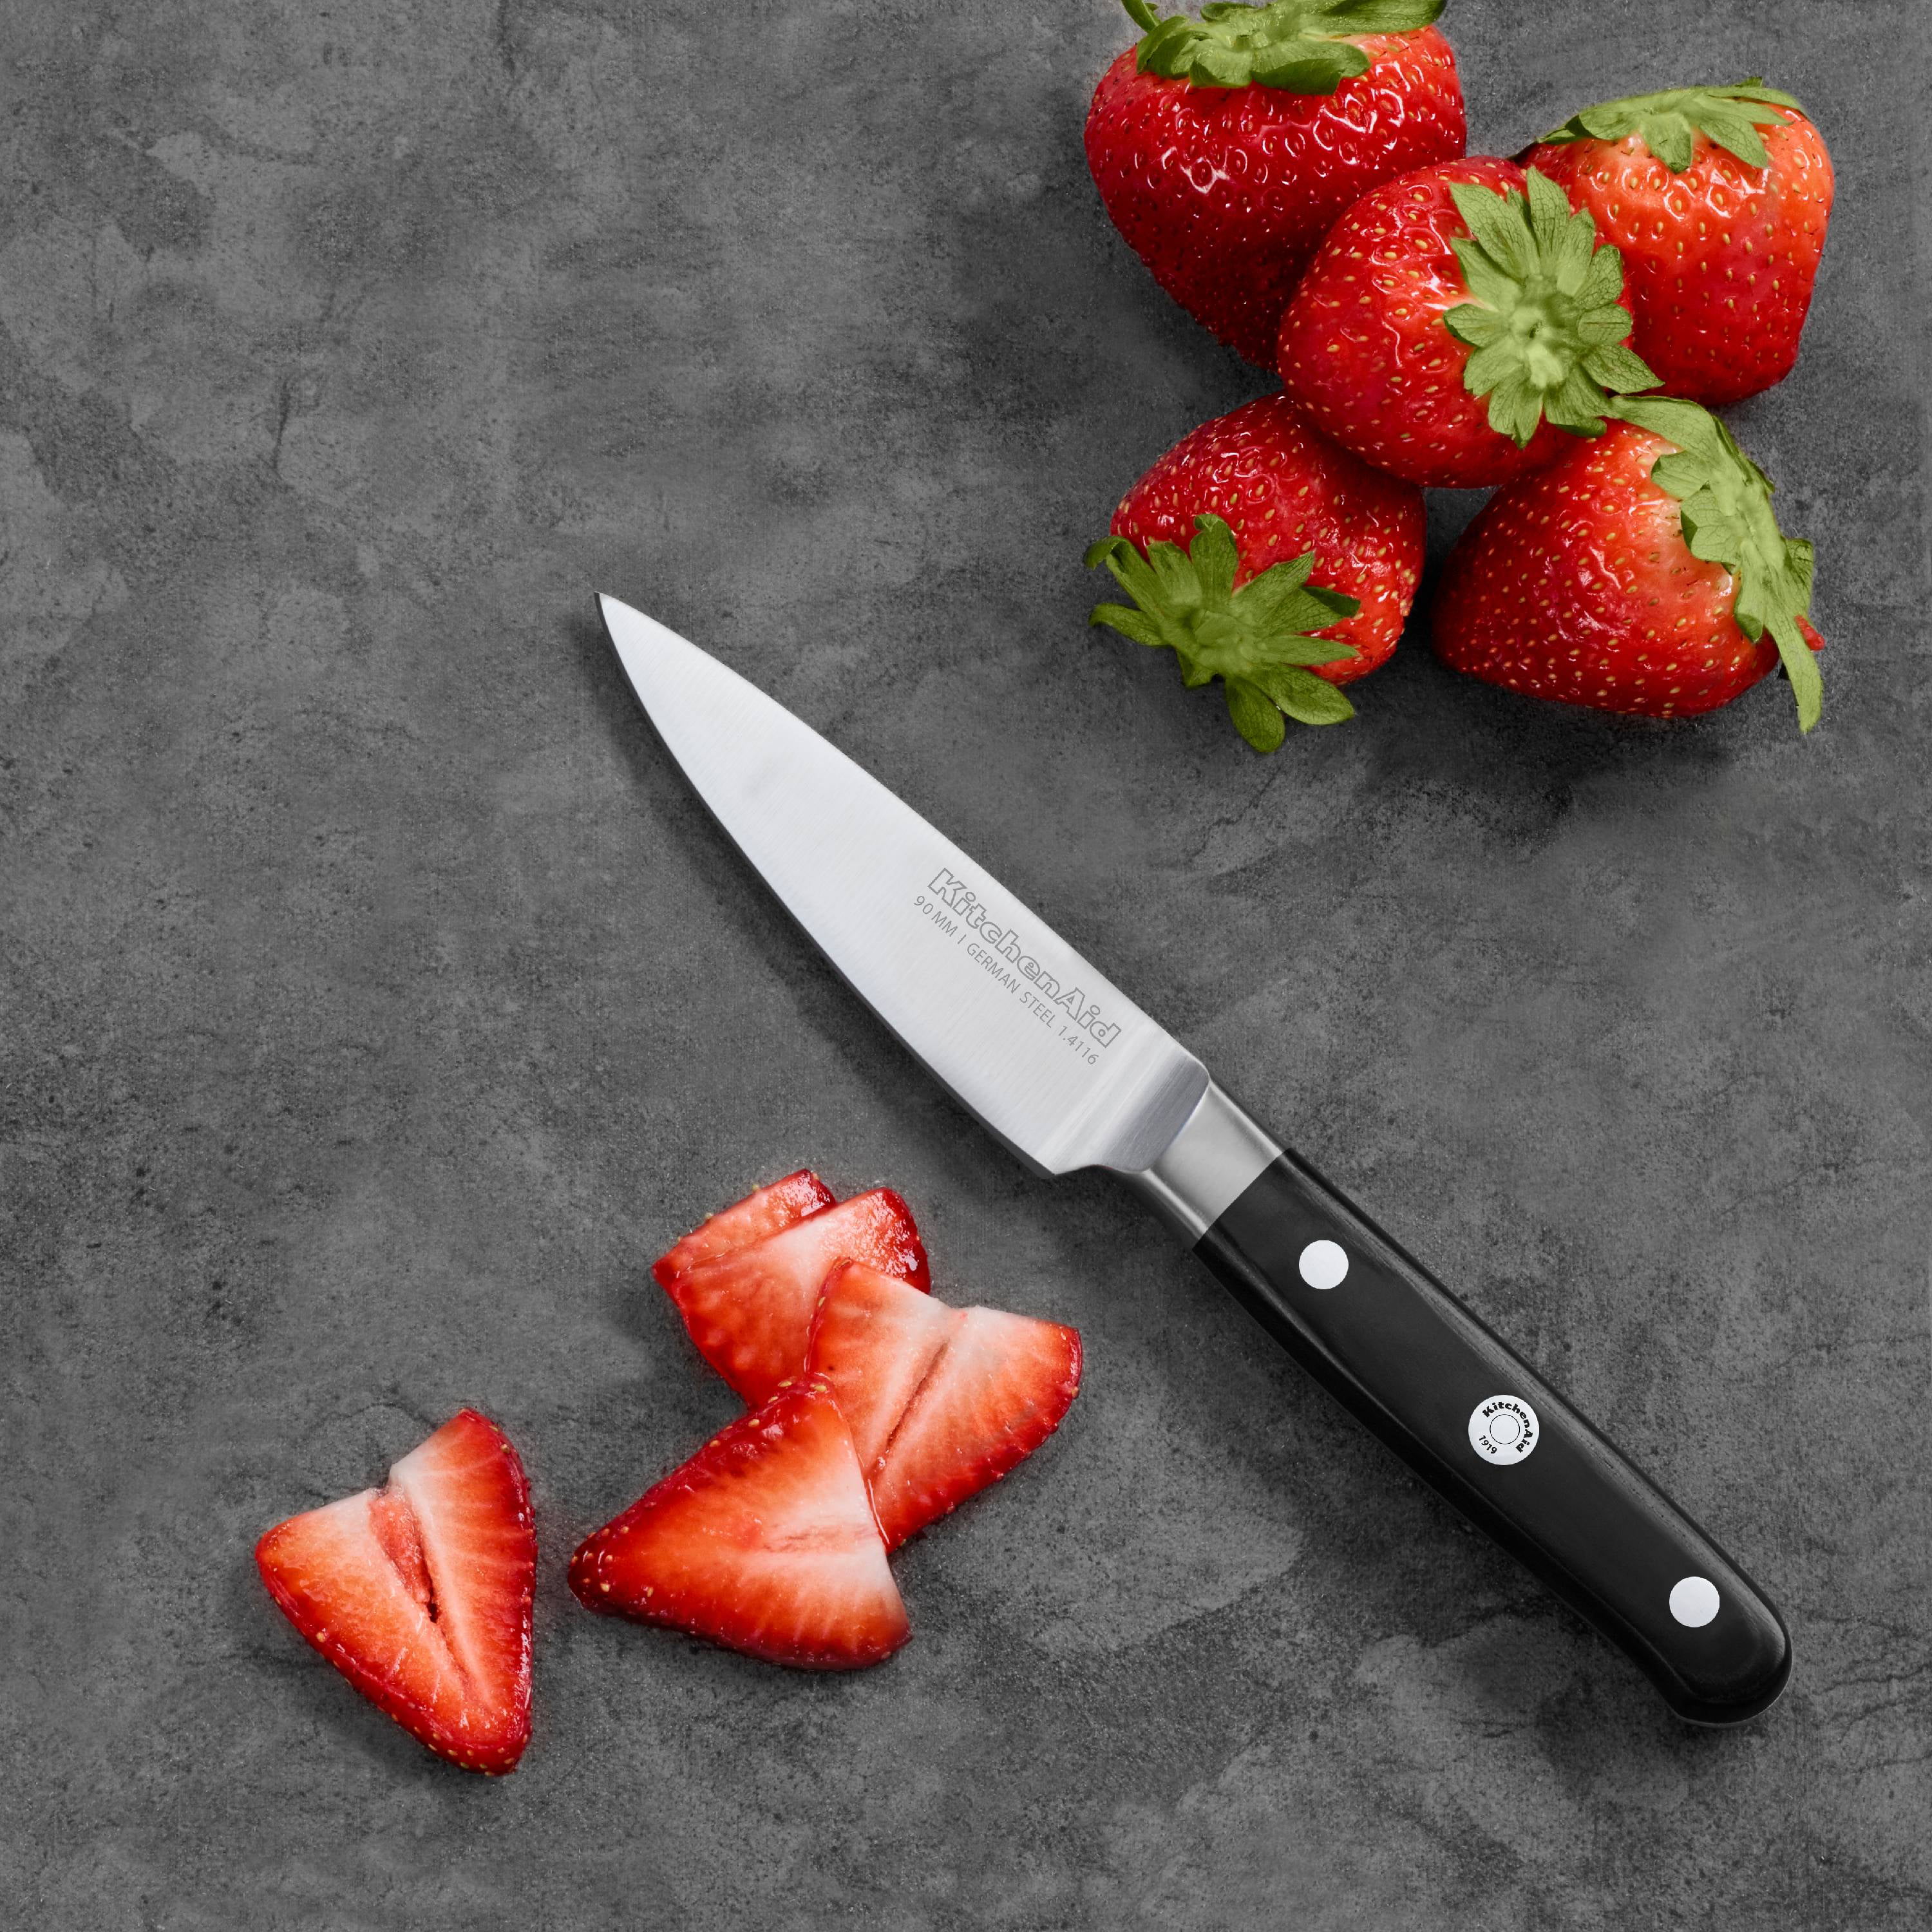 KitchenAid Classic Forged 3.5 Triple Rivet Paring Knife - KKFTR3PR 1 ct